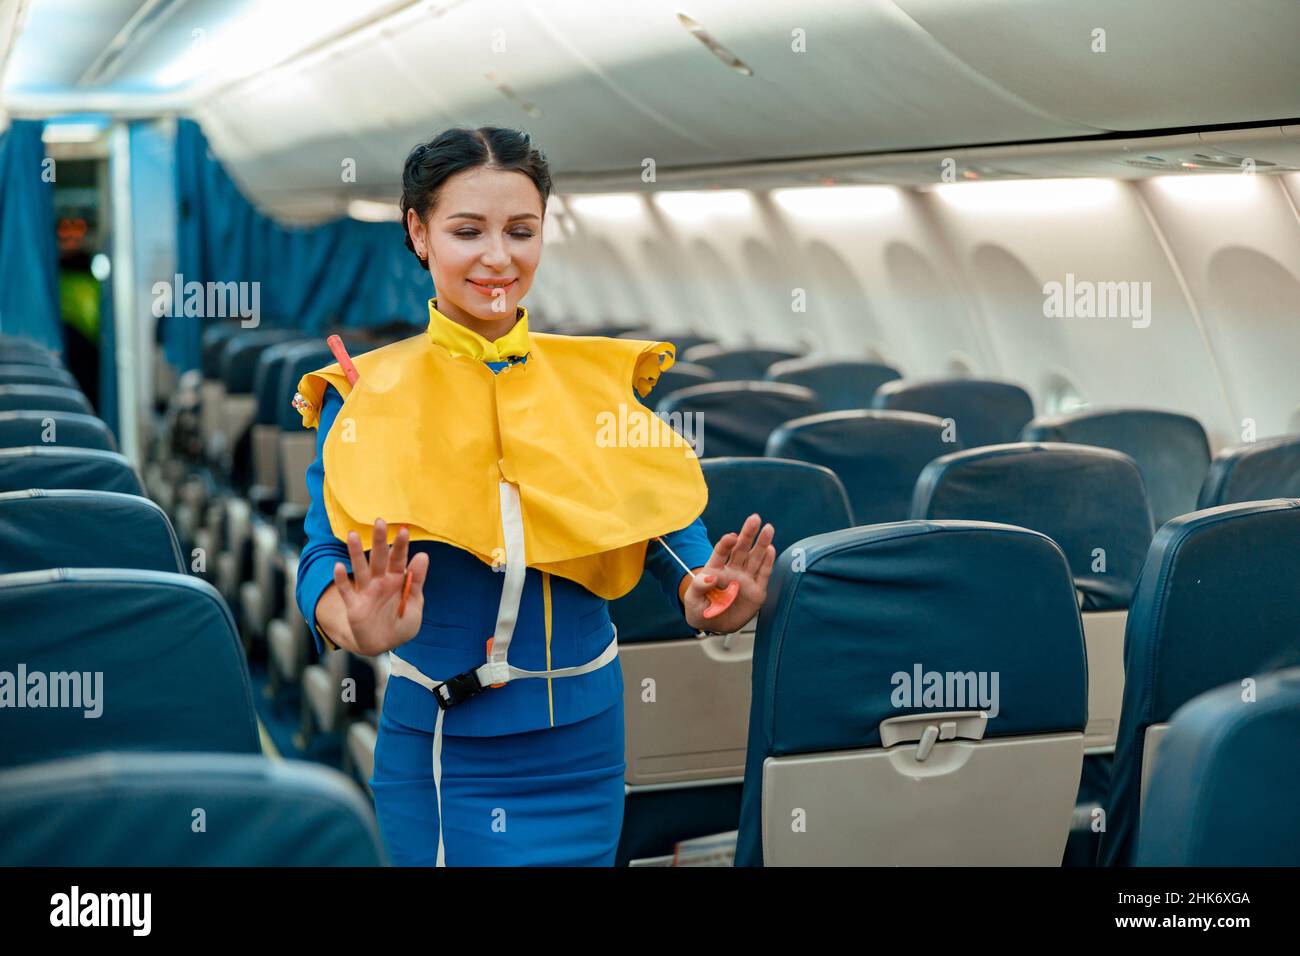 Un employé de bord démontre comment utiliser la gilet de sauvetage dans un avion Banque D'Images